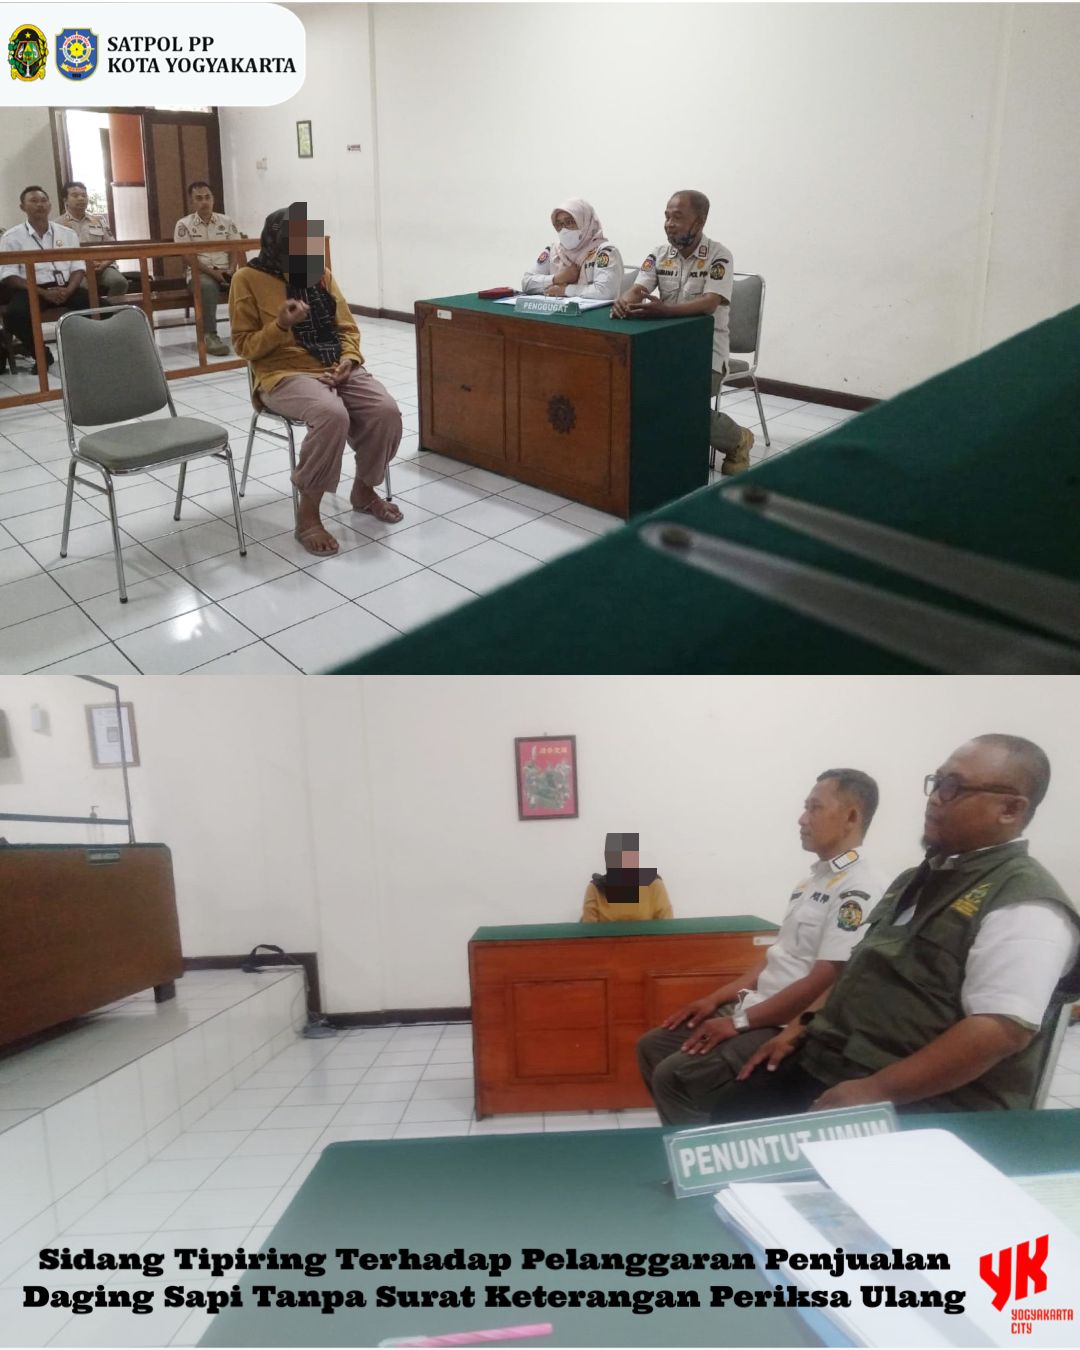 Sidang Tipiring di Pengadilan Negeri Yogyakarta: 1 Terdakwa Didenda atas Pelanggaran Penjualan Daging Sapi Tanpa Dilengkapi Surat Keterangan Periksa Ulang